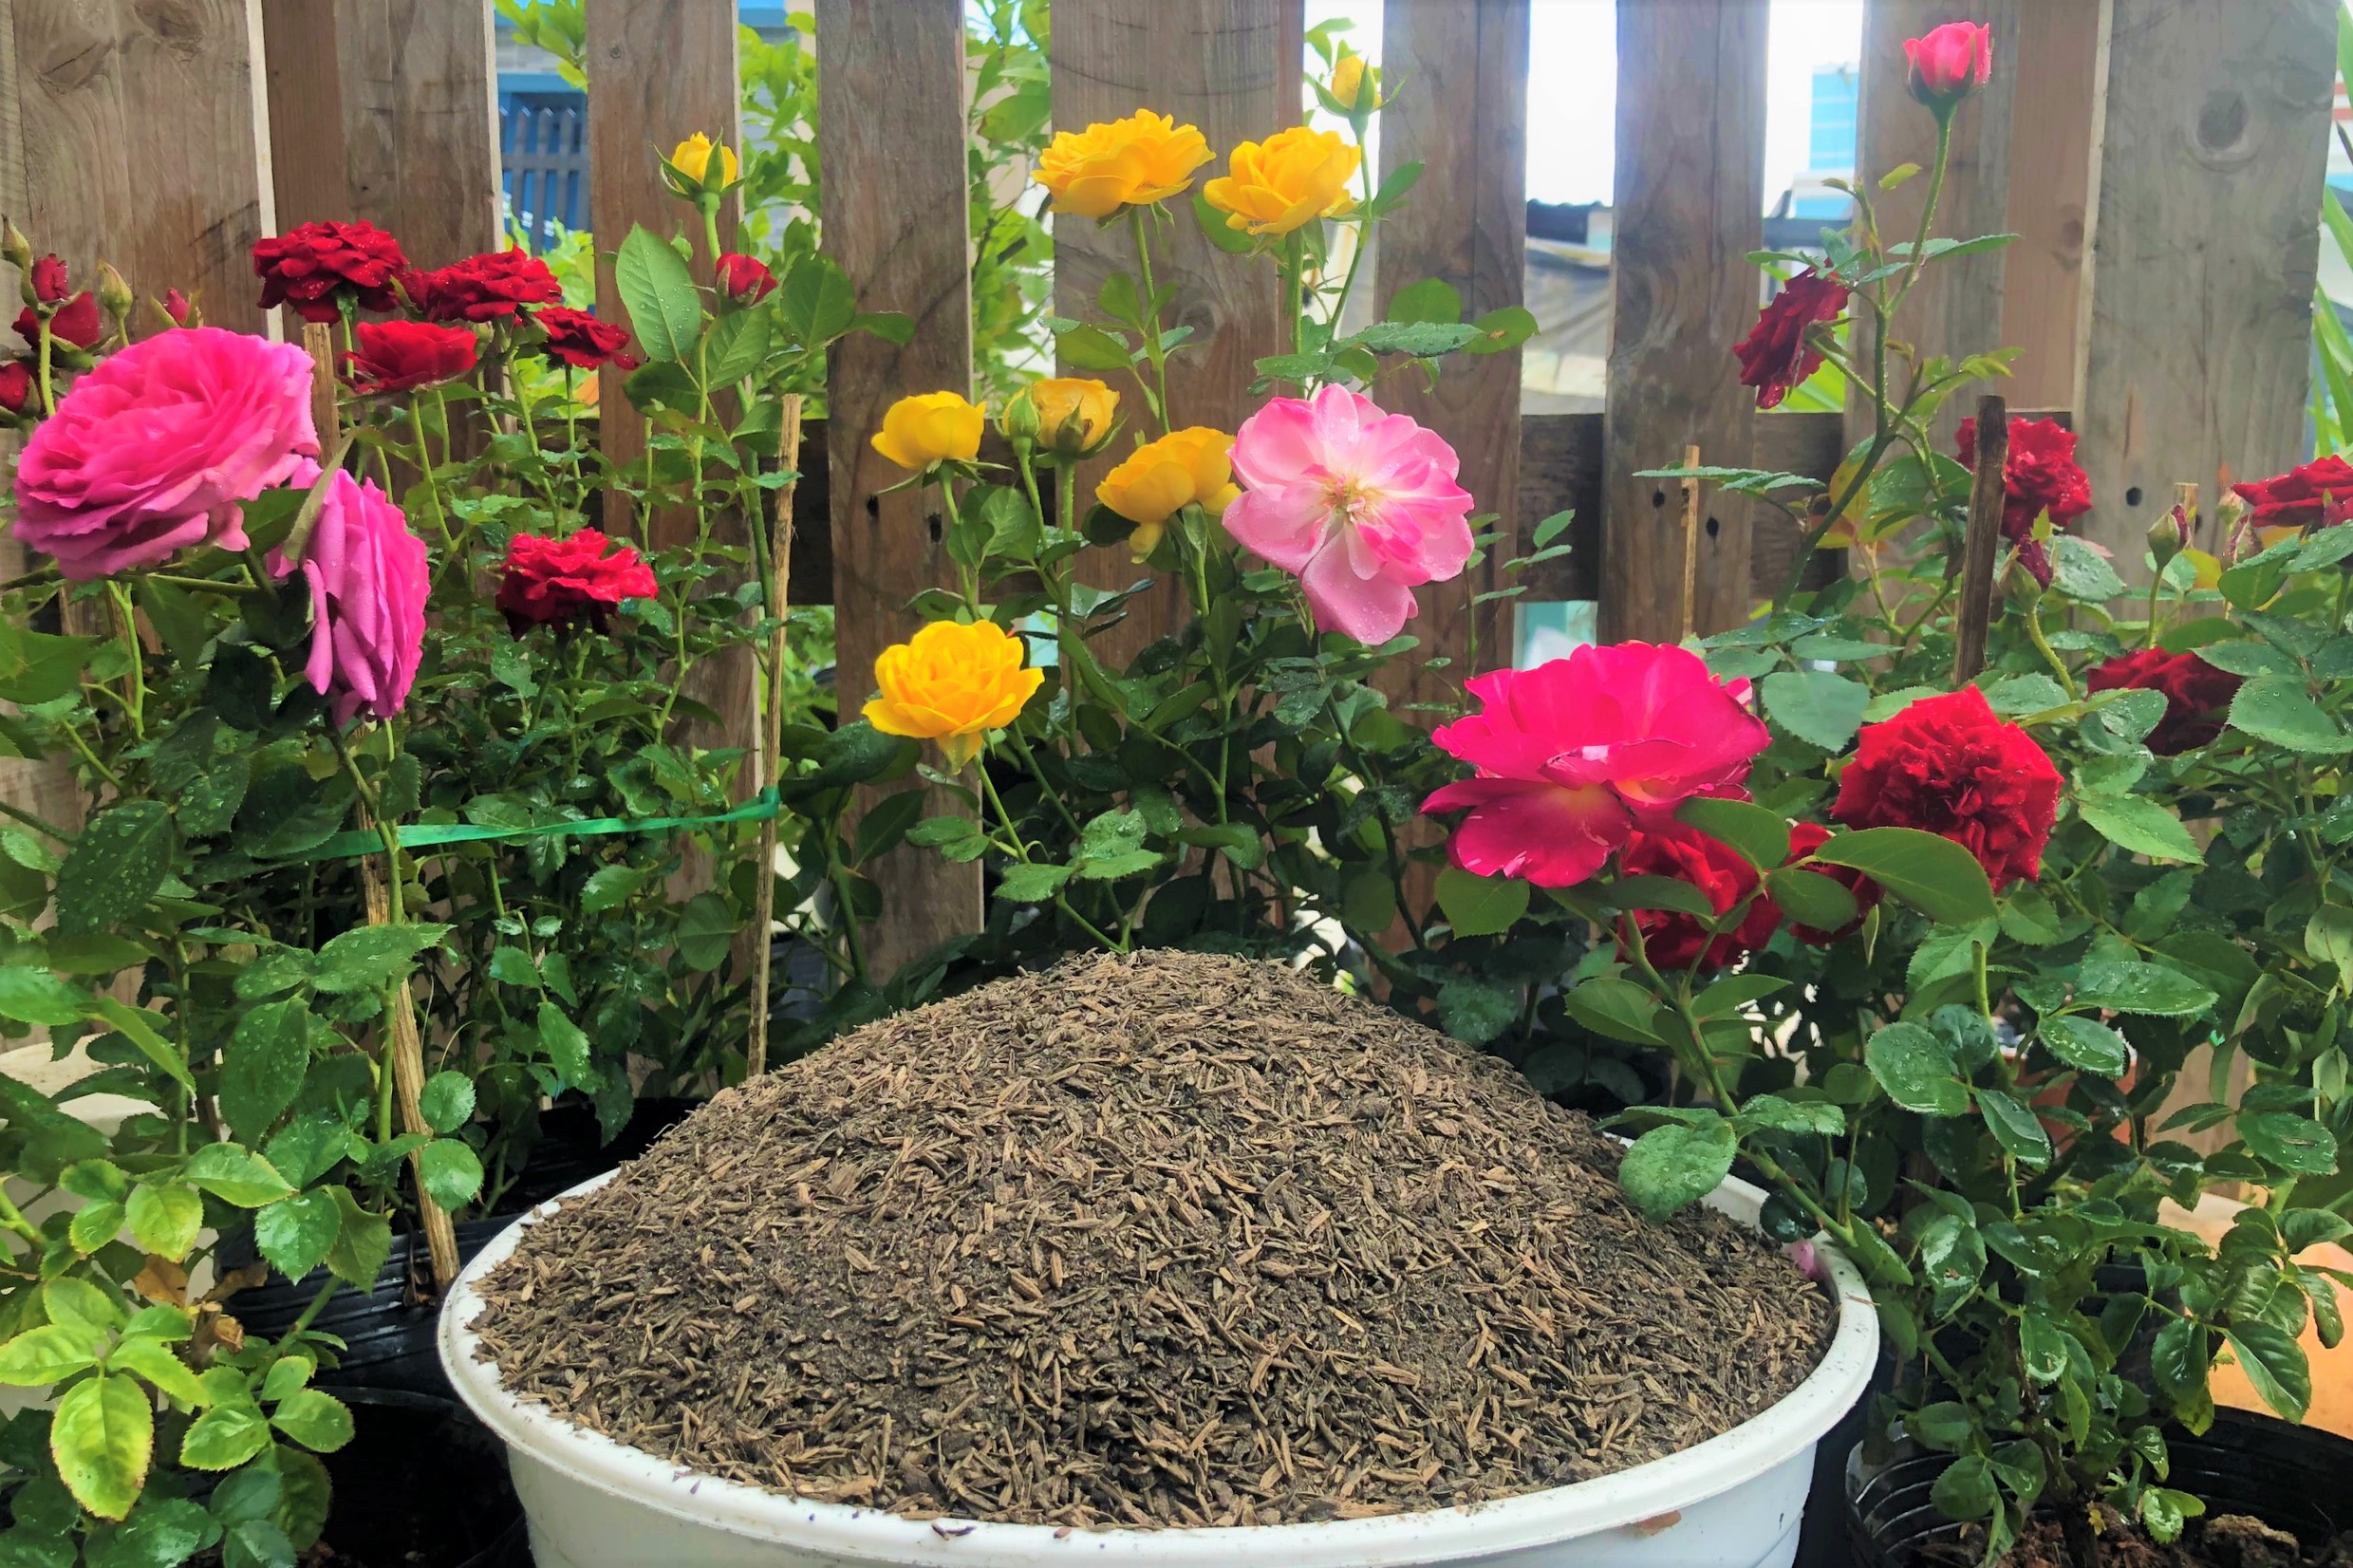 2 kilogam đất trồng hoa hồng giàu dinh dưỡng có vỏ trấu mục tơi xốp thoát nước tốt